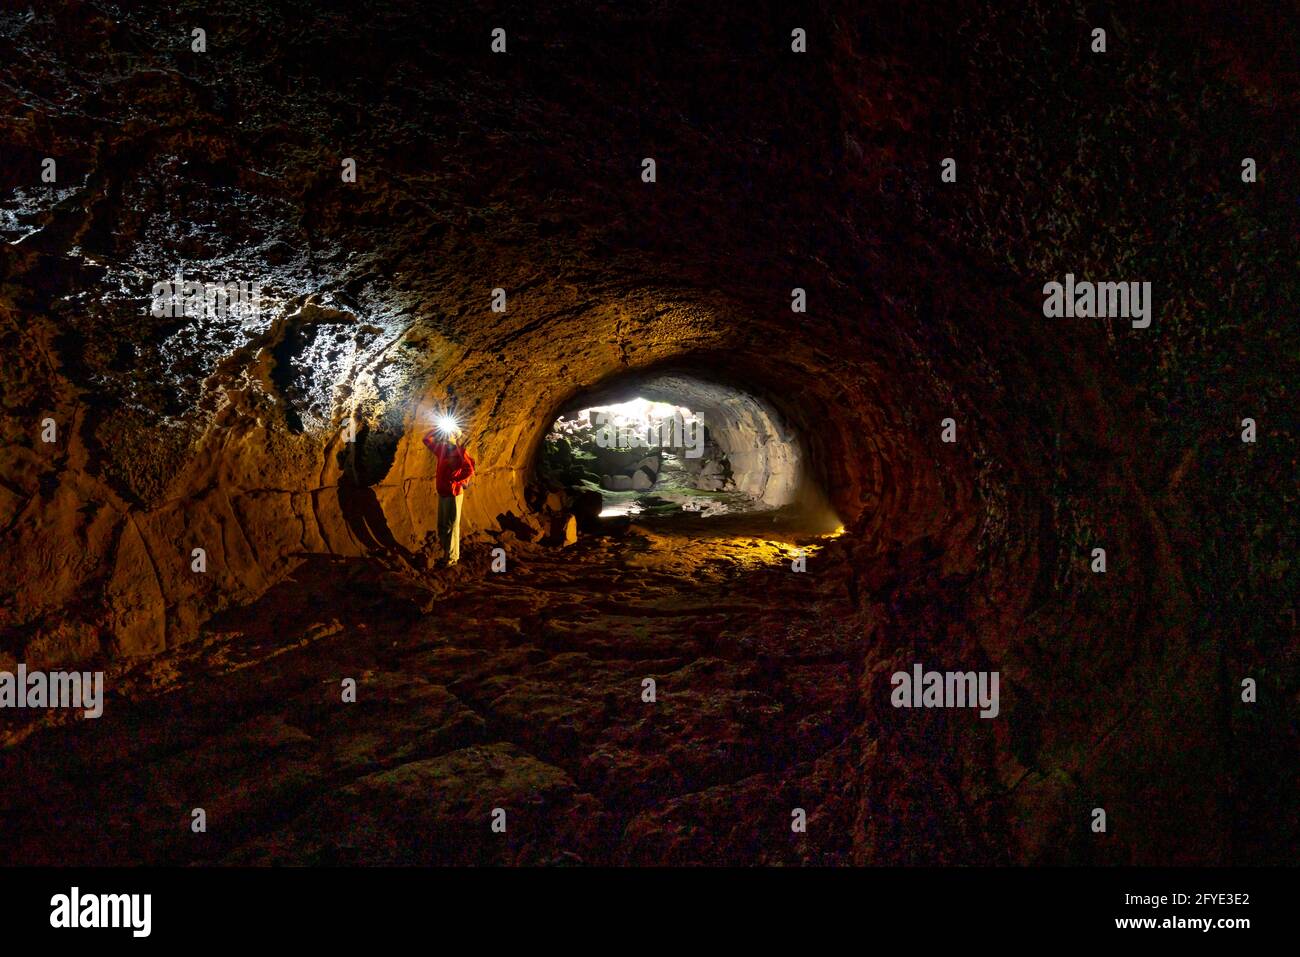 District de Dinh Quan, province de Dong Nai, Vietnam - 22 mai 2021 : une touriste féminine explore un tunnel de lave à Dinh Quan, province de Dong Nai, Vietnam Banque D'Images